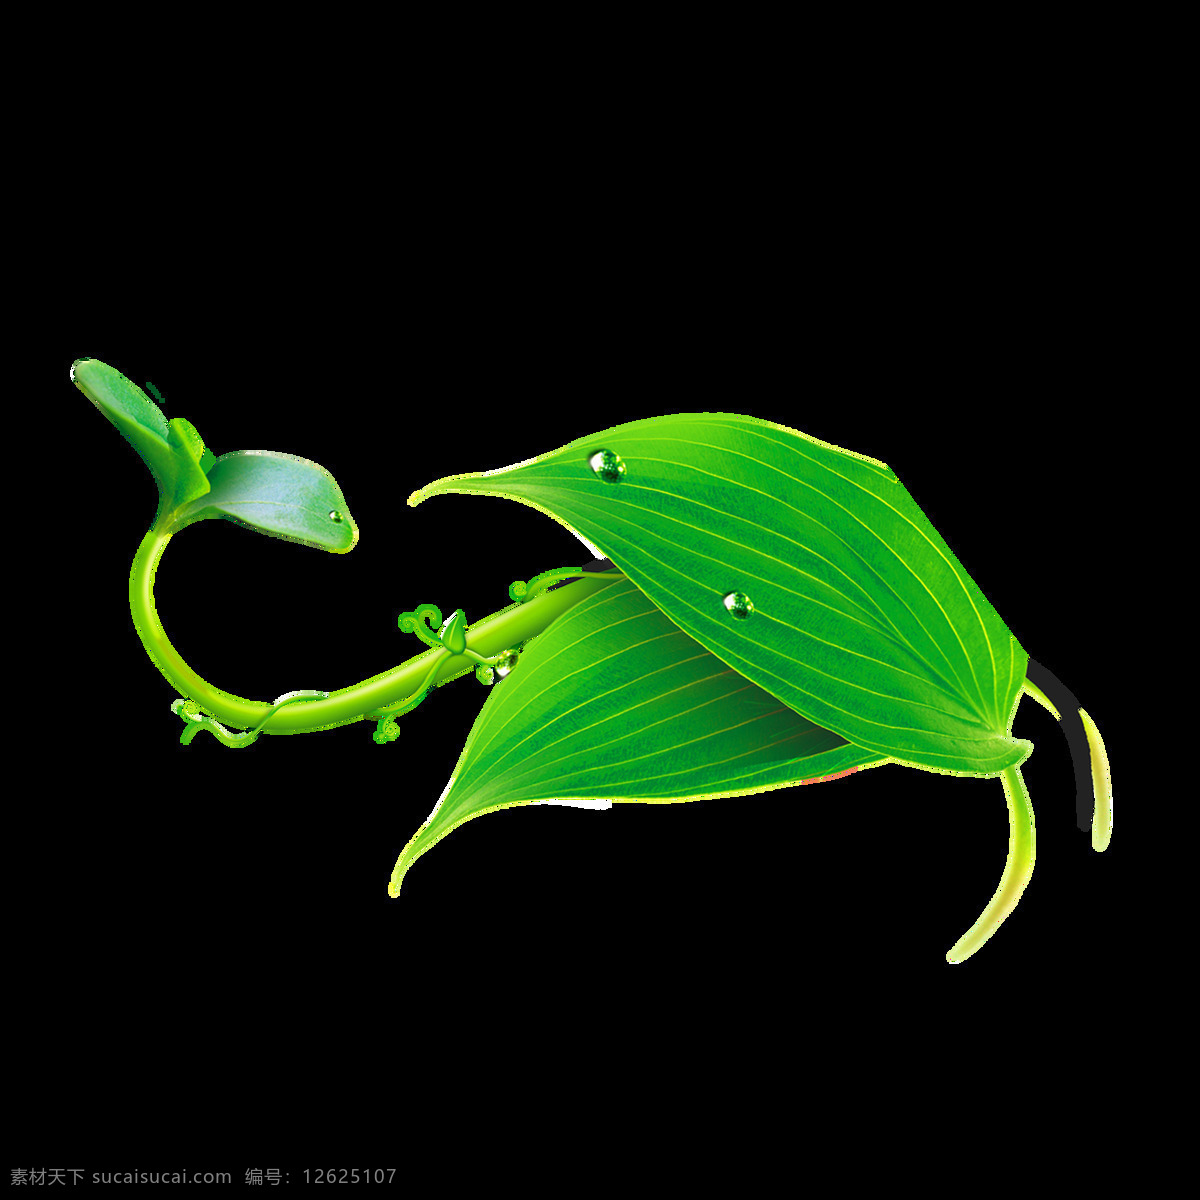 绿色 藤 曼森 系 树叶 透明 海报设计装饰 抠图专用 森系 设计素材 淘宝素材 藤曼 透明素材 装饰 装饰图案